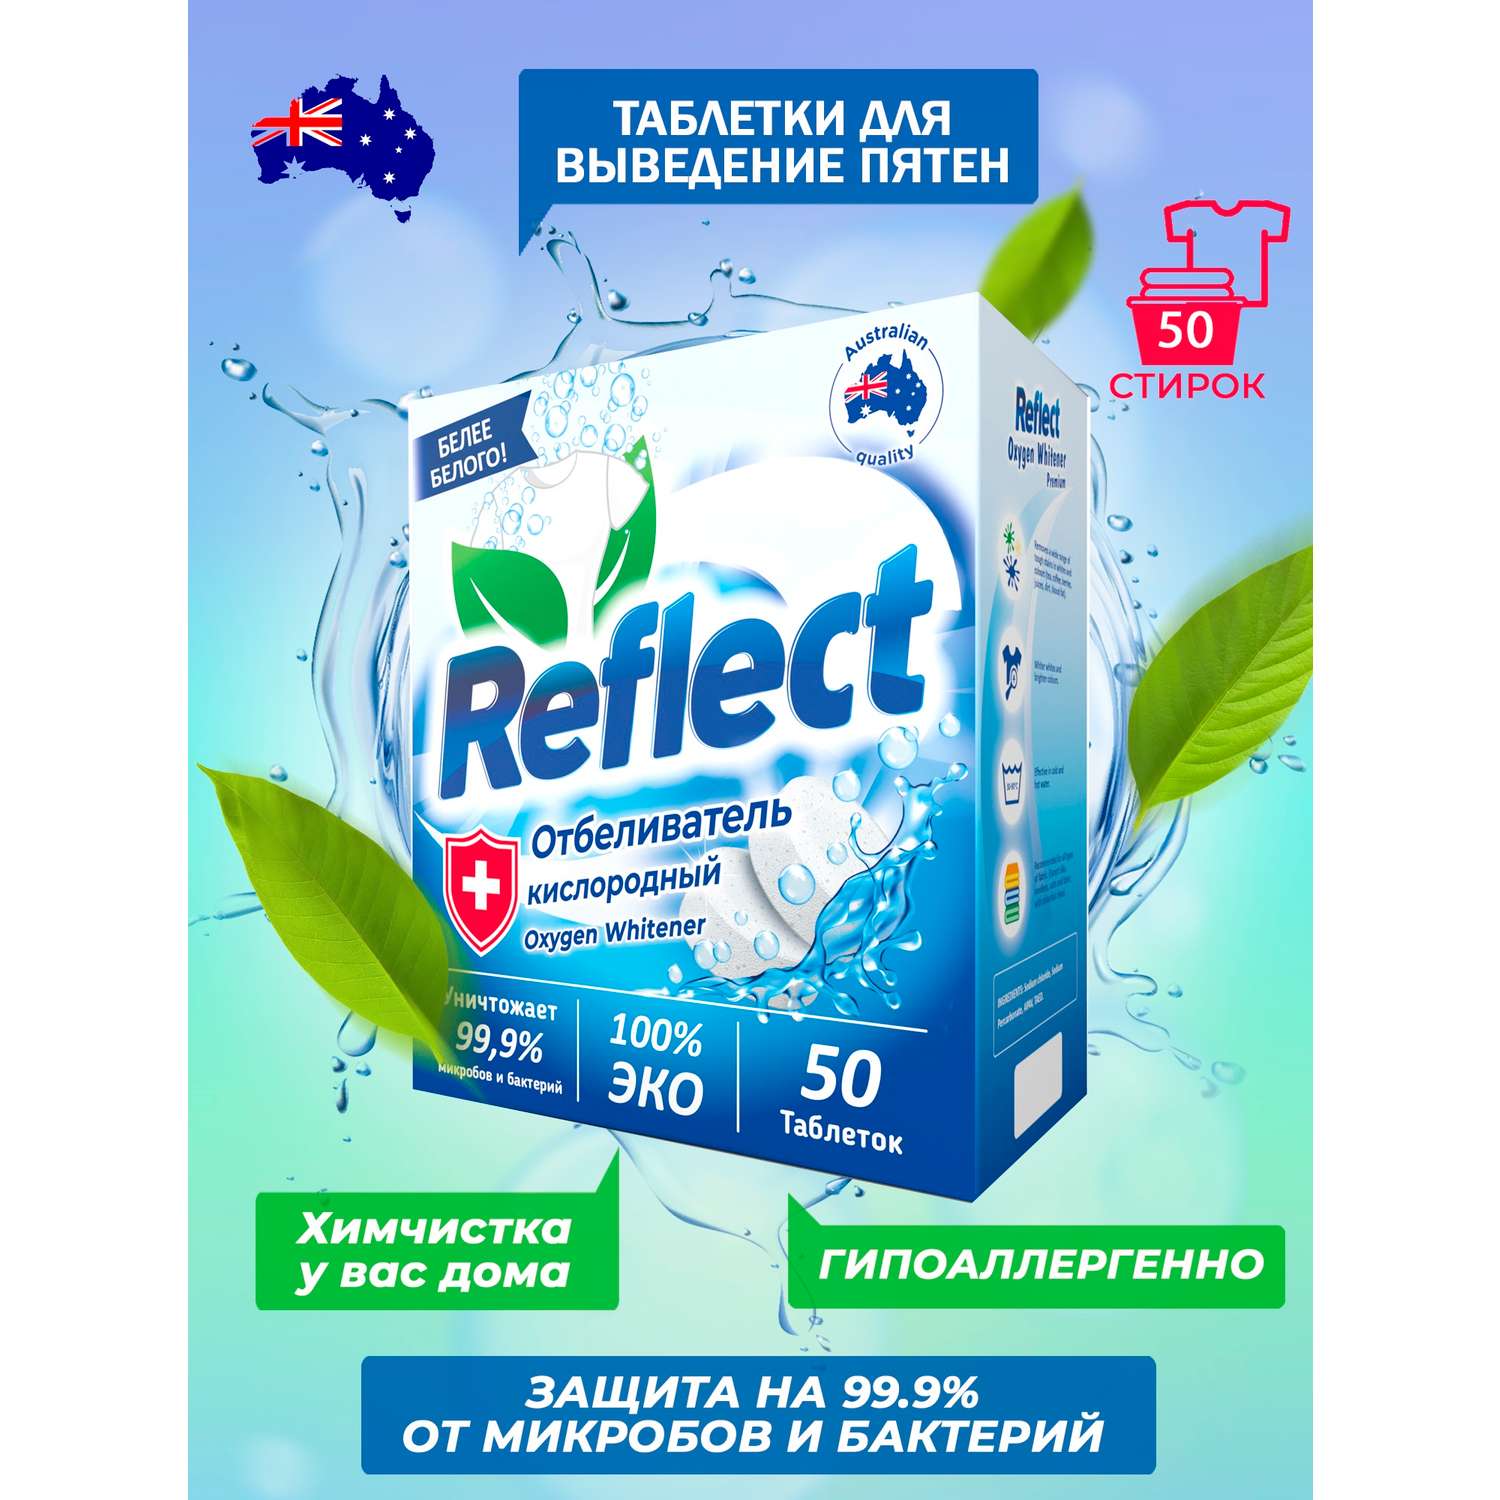 Отбеливатель Oxygen Whitener Reflect Premium для стирки светлого и белого белья экологичный кислородный без хлора 50 таблеток - фото 2